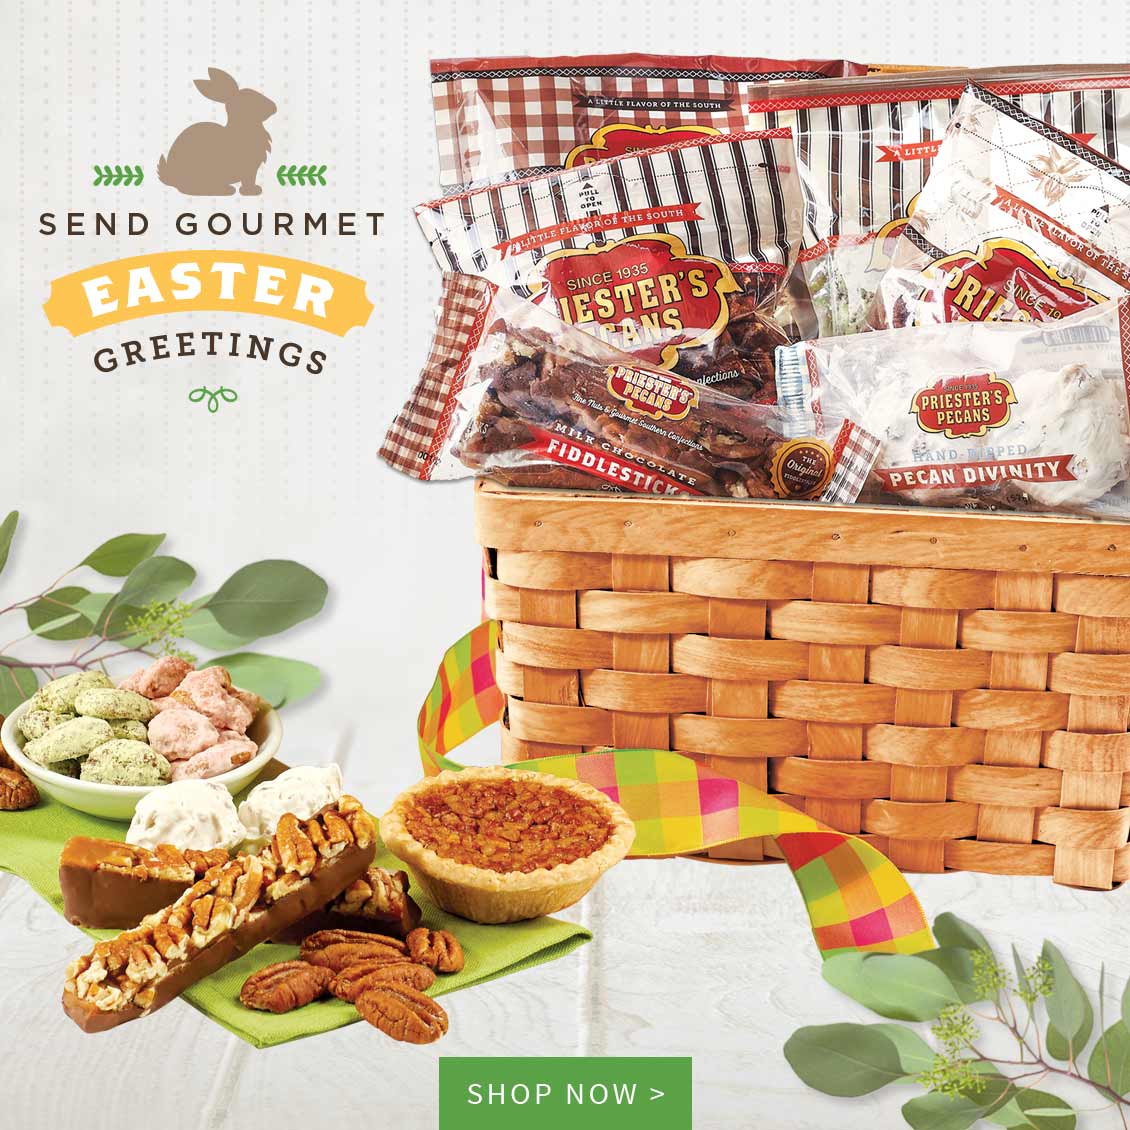 Send Gourmet Easter Greetings >